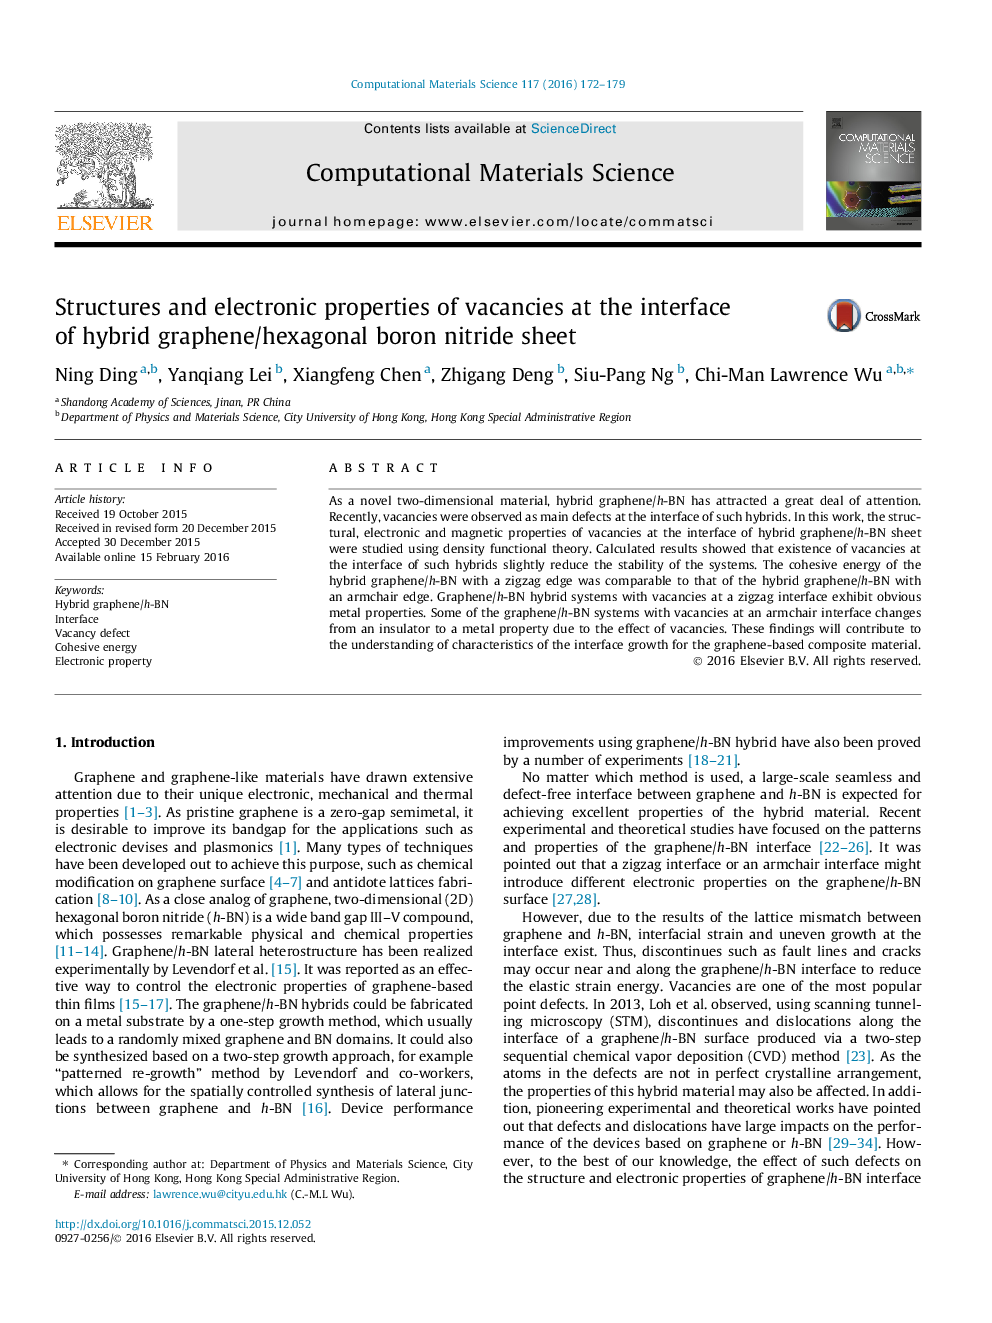 سازه ها و خواص الکترونیکی خالی در رابط گرافن هیگز / شش ضلعی بور نیترید ورق 